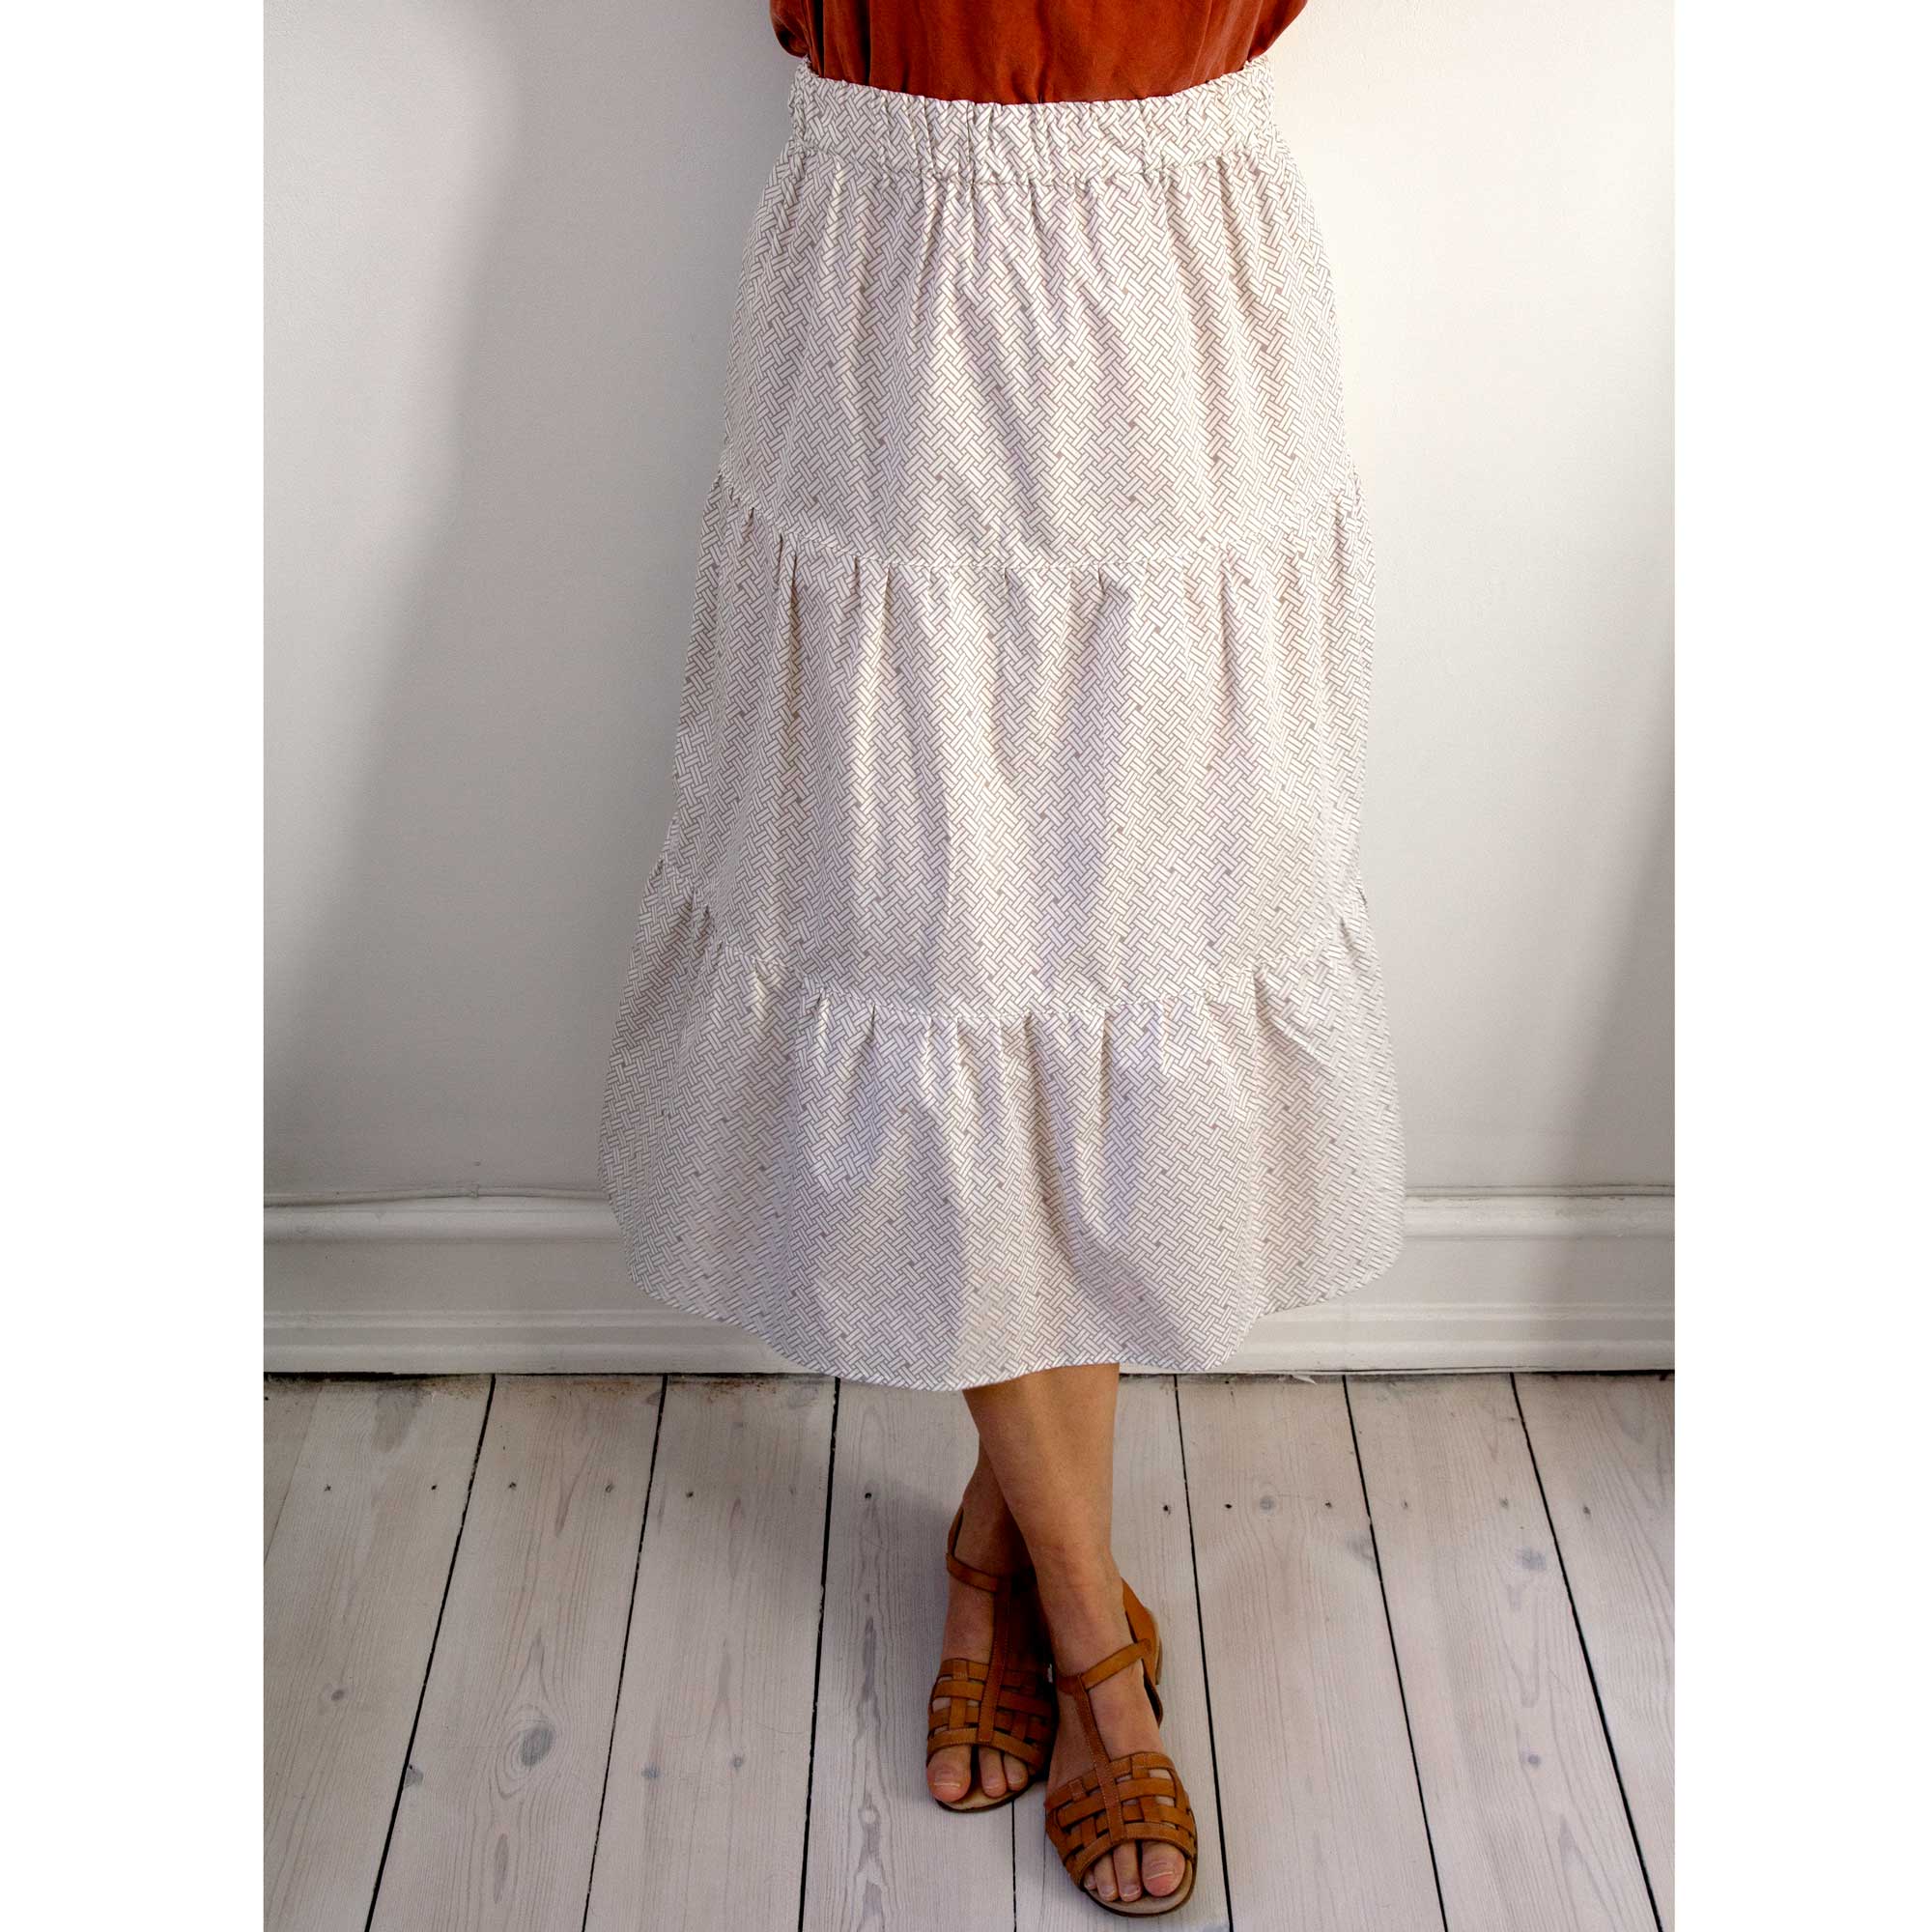 Sonya skirt, Weave ash brown, design Anne Rosenberg, RosenbergCph